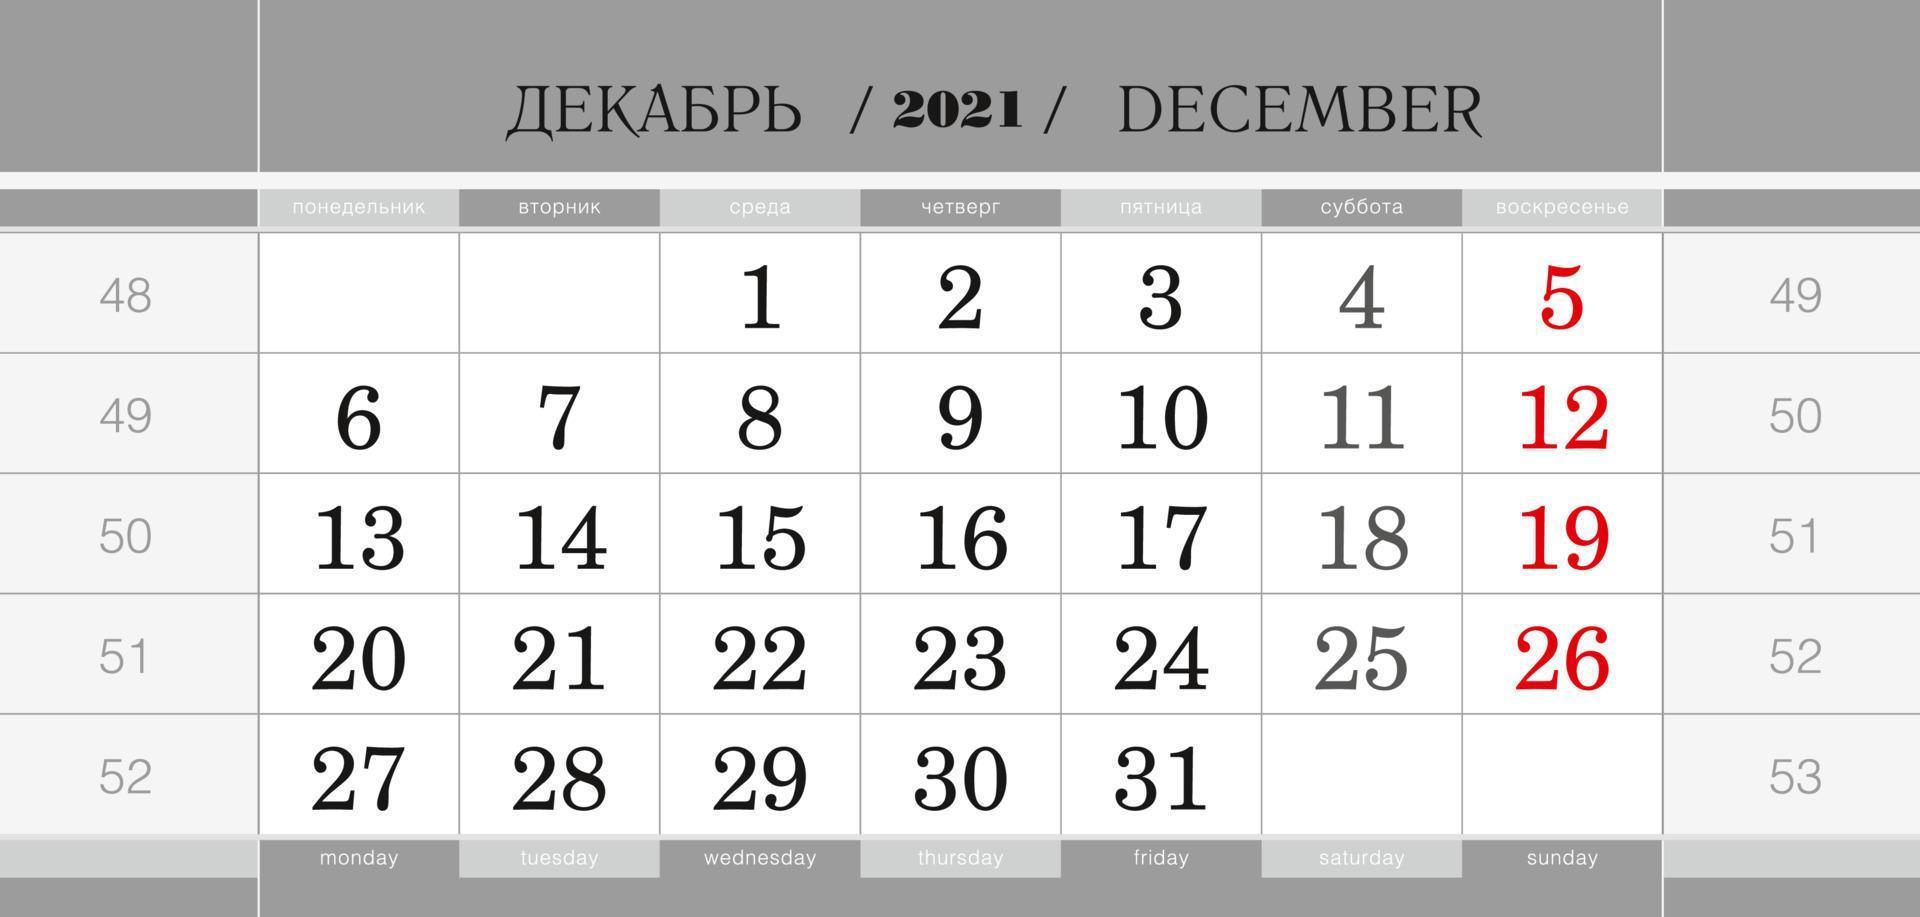 bloque trimestral del calendario para el año 2022, diciembre de 2021. calendario de pared, inglés y ruso. la semana comienza a partir del lunes. vector